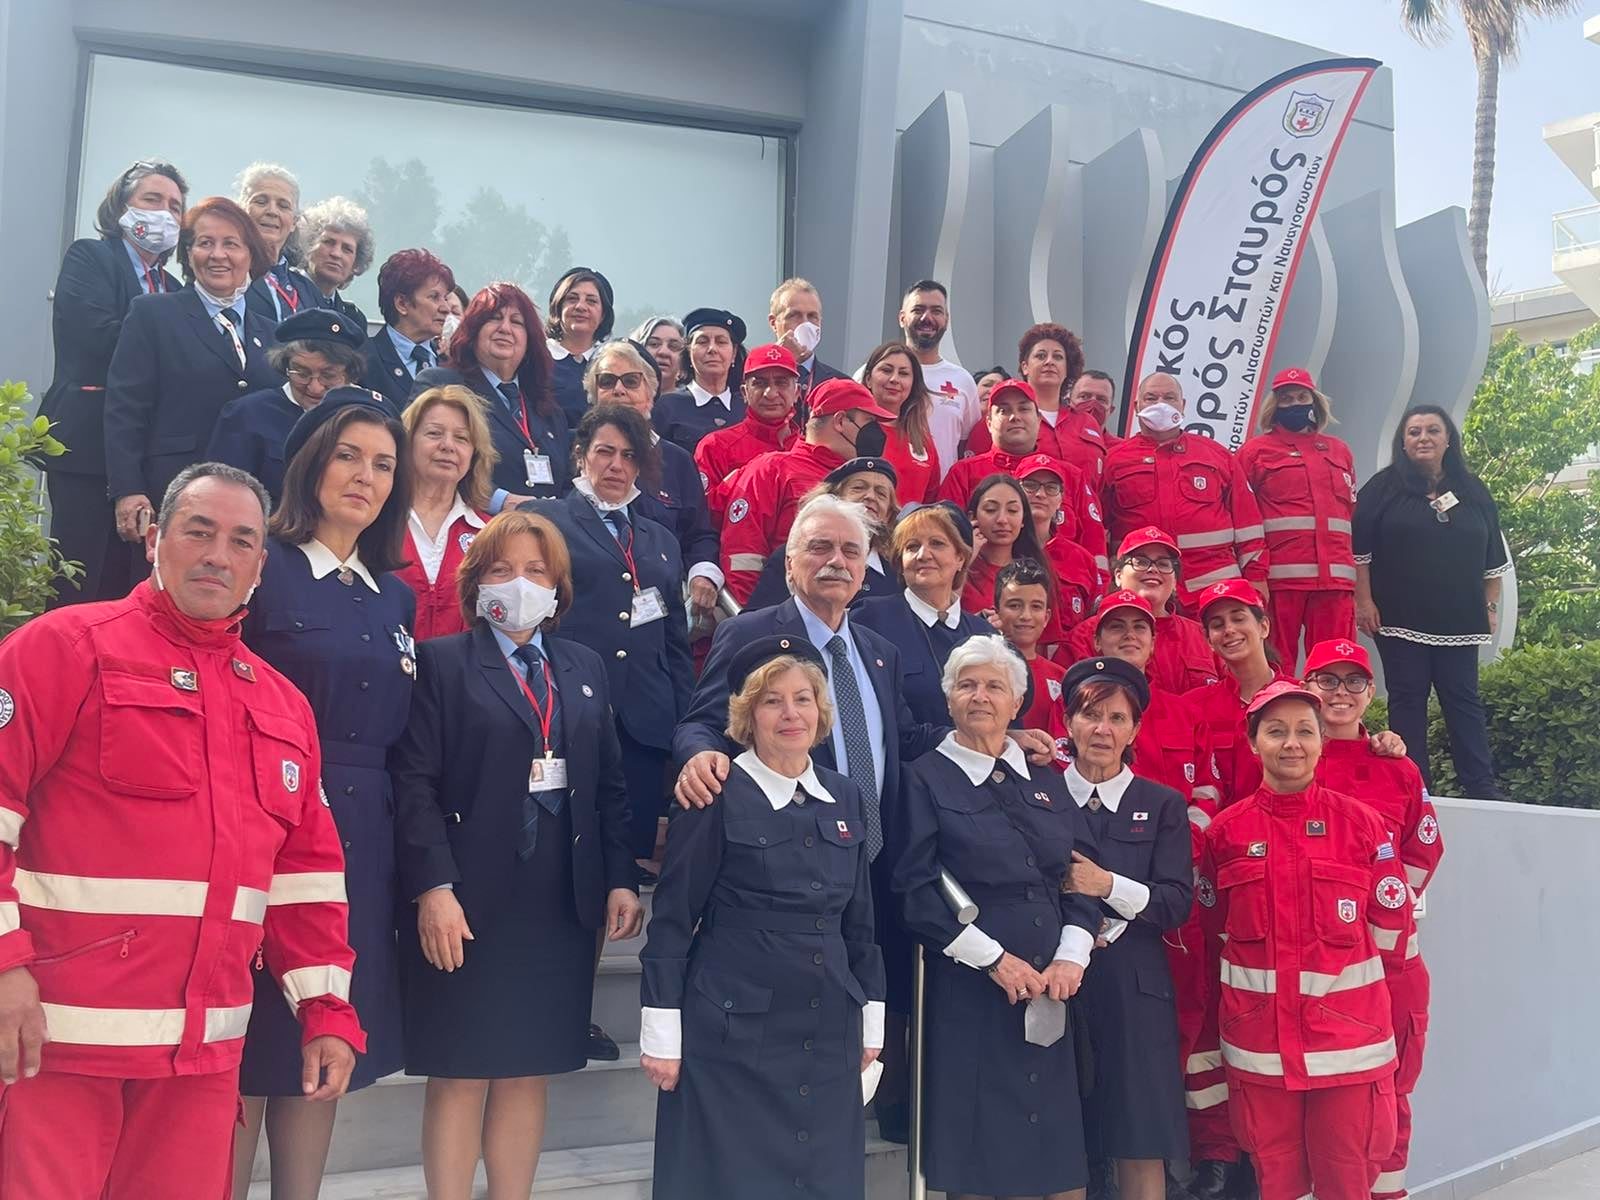 Το Περιφερειακό Τμήμα του Ελληνικού Ερυθρού Σταυρού στην Ρόδο, στο πλαίσιο εορτασμού της Παγκόσμιας Ημέρας Ερυθρού Σταυρού & Ερυθράς Ημισελήνου (8/5) διοργάνωσε μεγάλη έκθεση φωτογραφίας